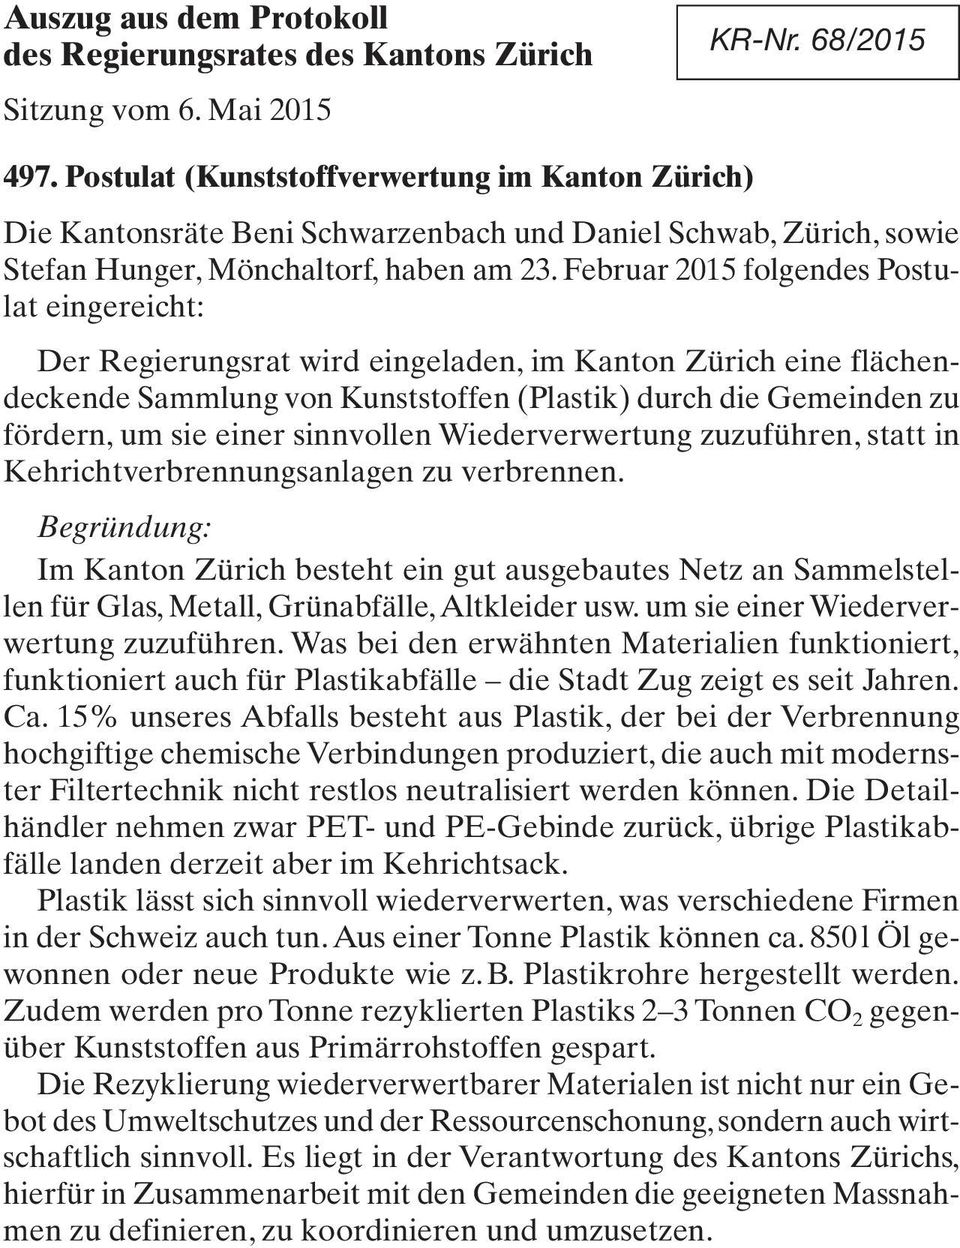 Februar 2015 folgendes Postulat eingereicht: Der Regierungsrat wird eingeladen, im Kanton Zürich eine flächendeckende Sammlung von Kunststoffen (Plastik) durch die Gemeinden zu fördern, um sie einer